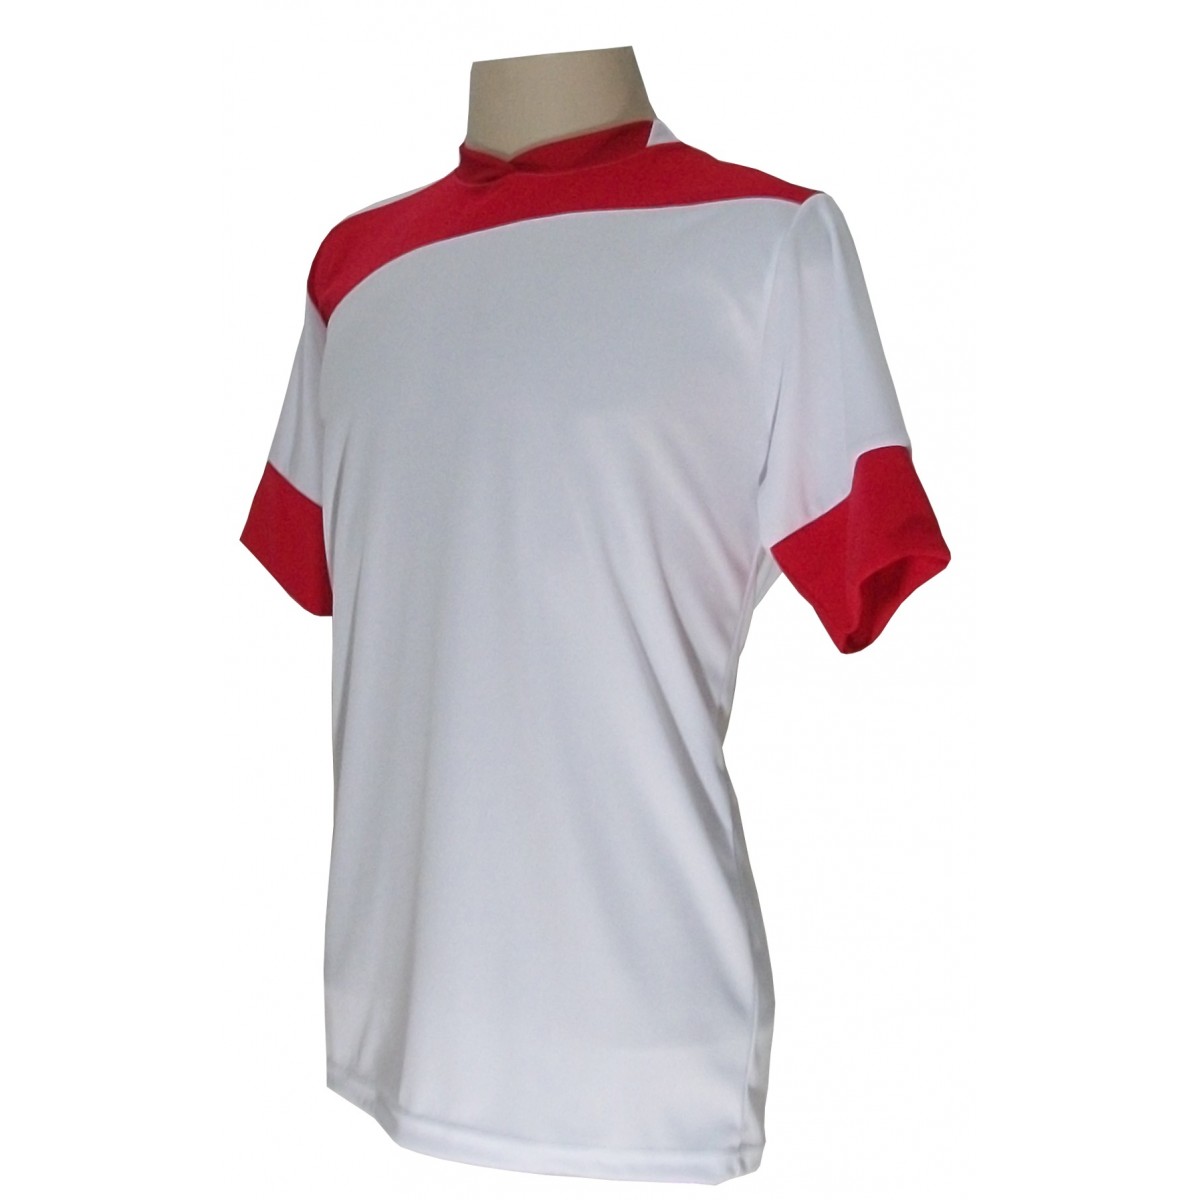 Jogo de Camisa com 14 unidades modelo Sporting Branco/Vermelho + Brindes